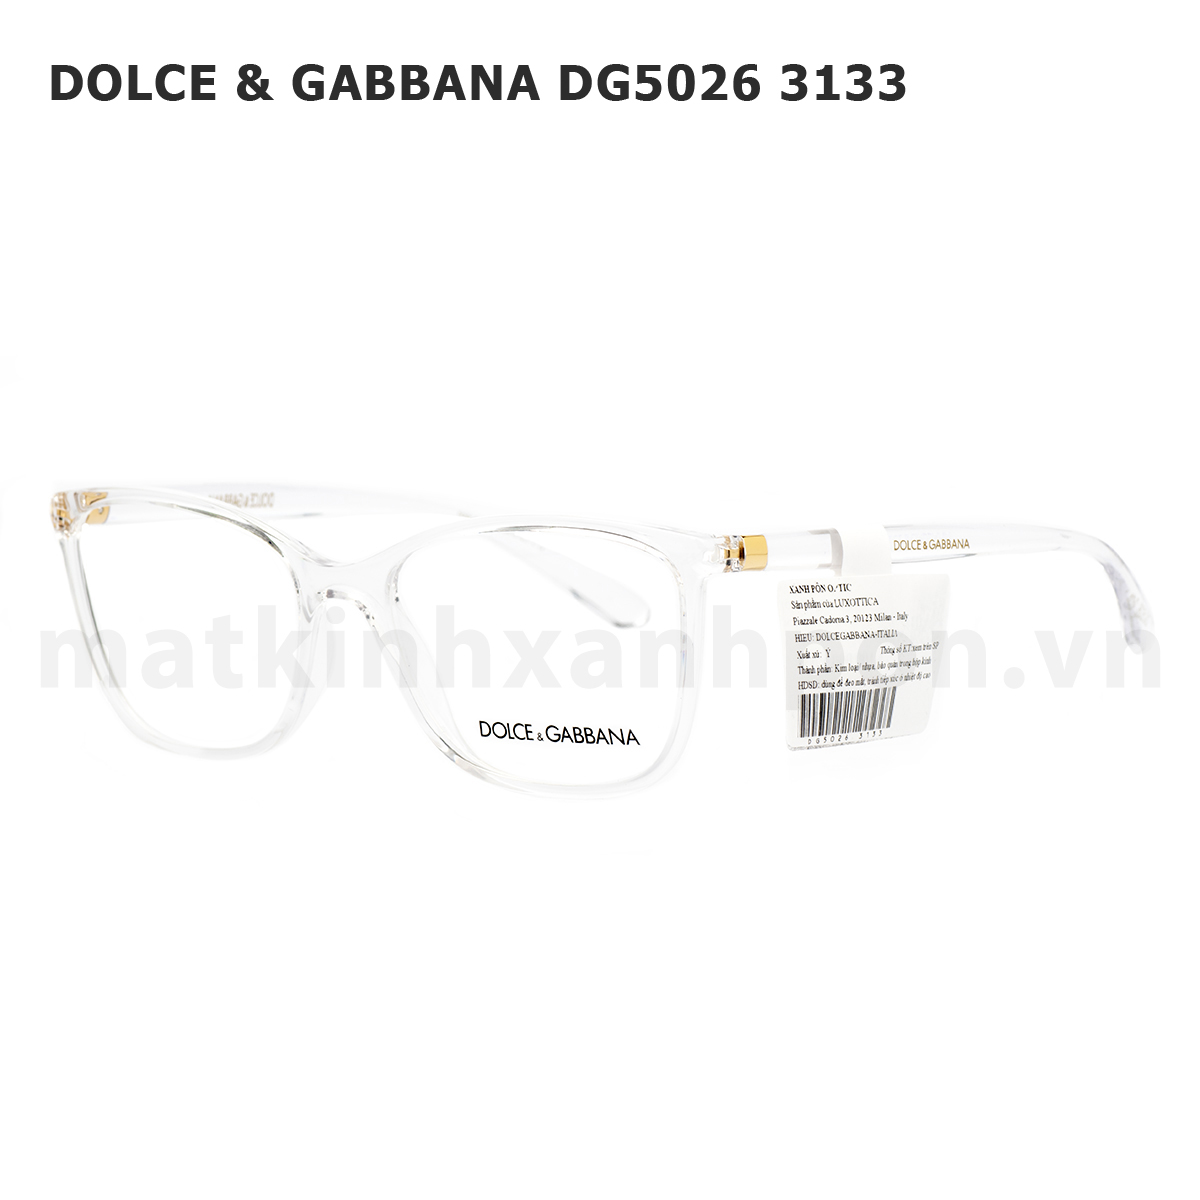 Dolce & Gabbana DG5026 3133